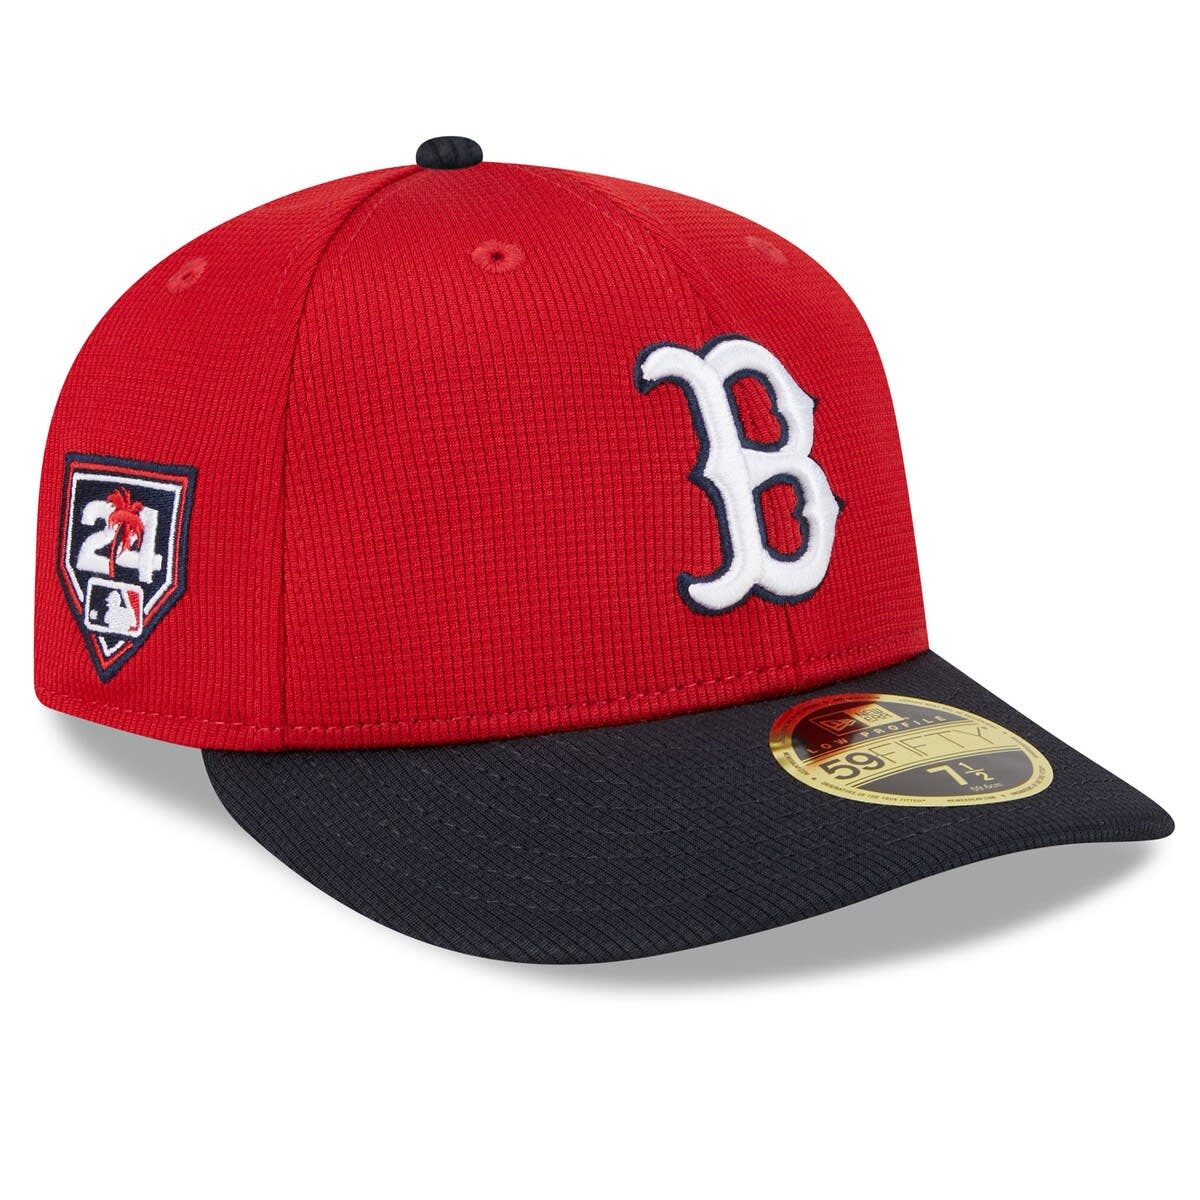 Men’s Boston Red Sox Camo Camo Wave 9FIFTY Snapback Hats